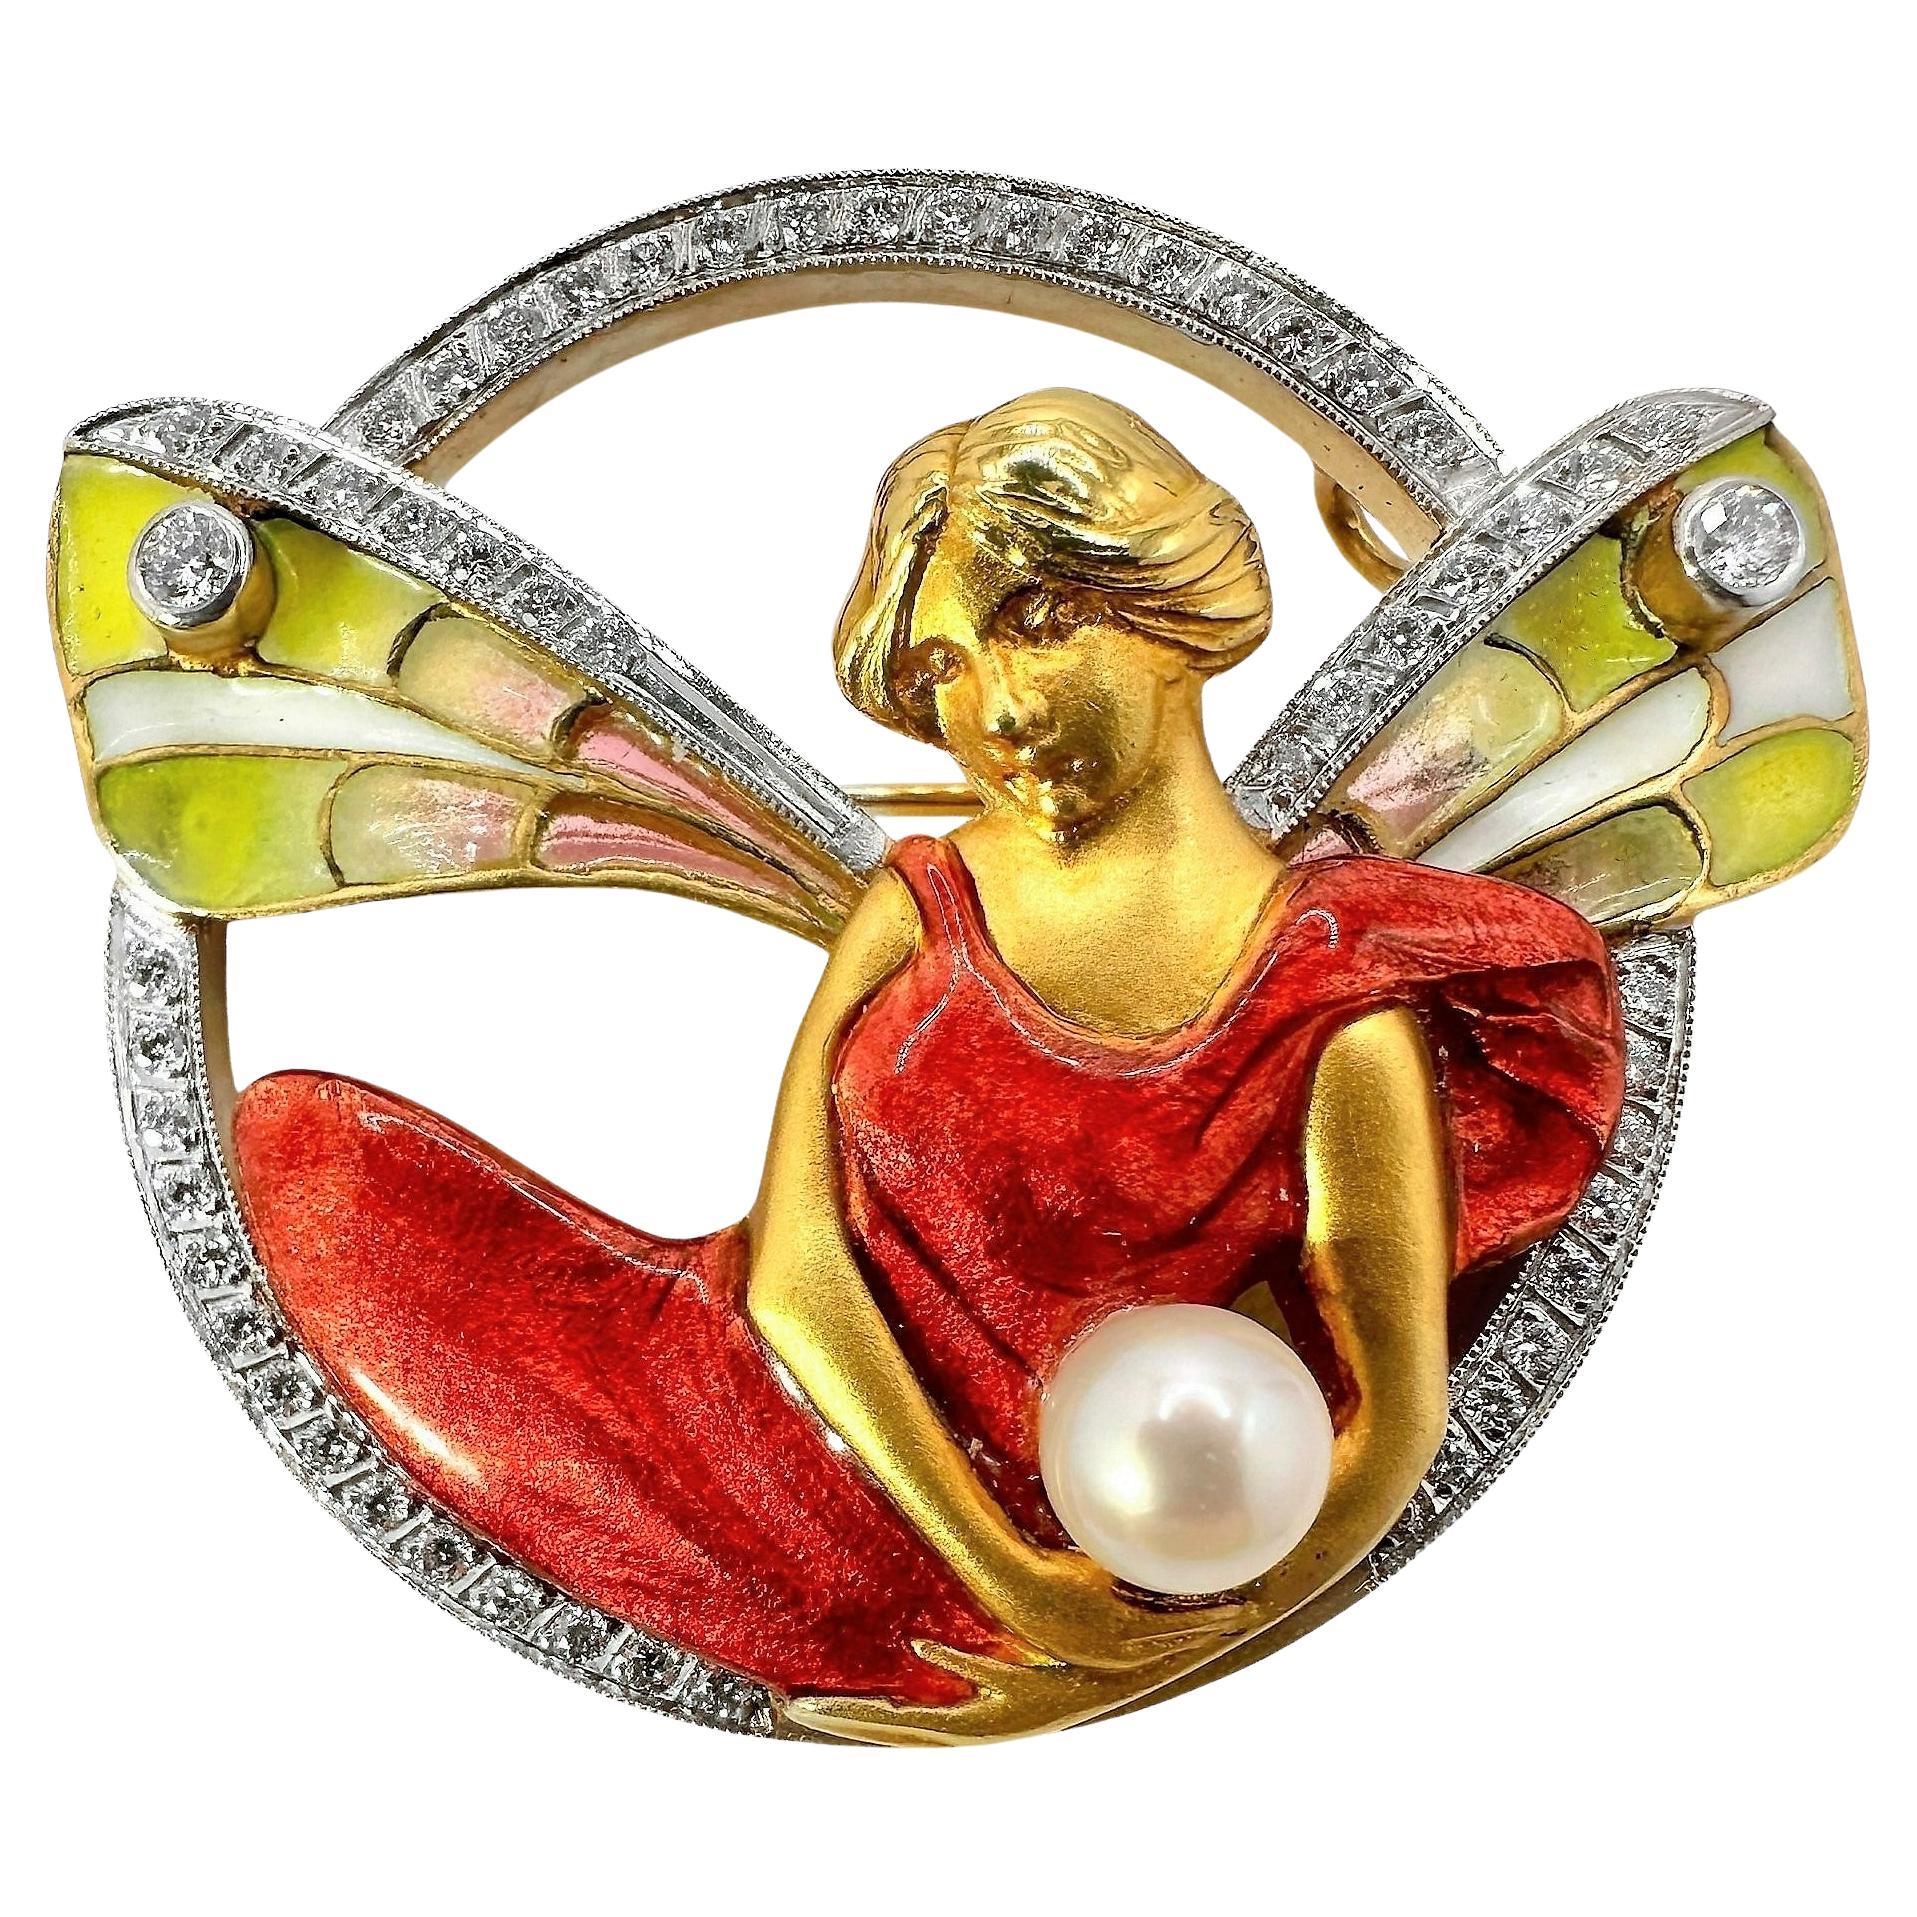 Exquisite mythologische Nymphe-Brosche von Masriera aus Gold, Diamanten, Perlen und Emaille